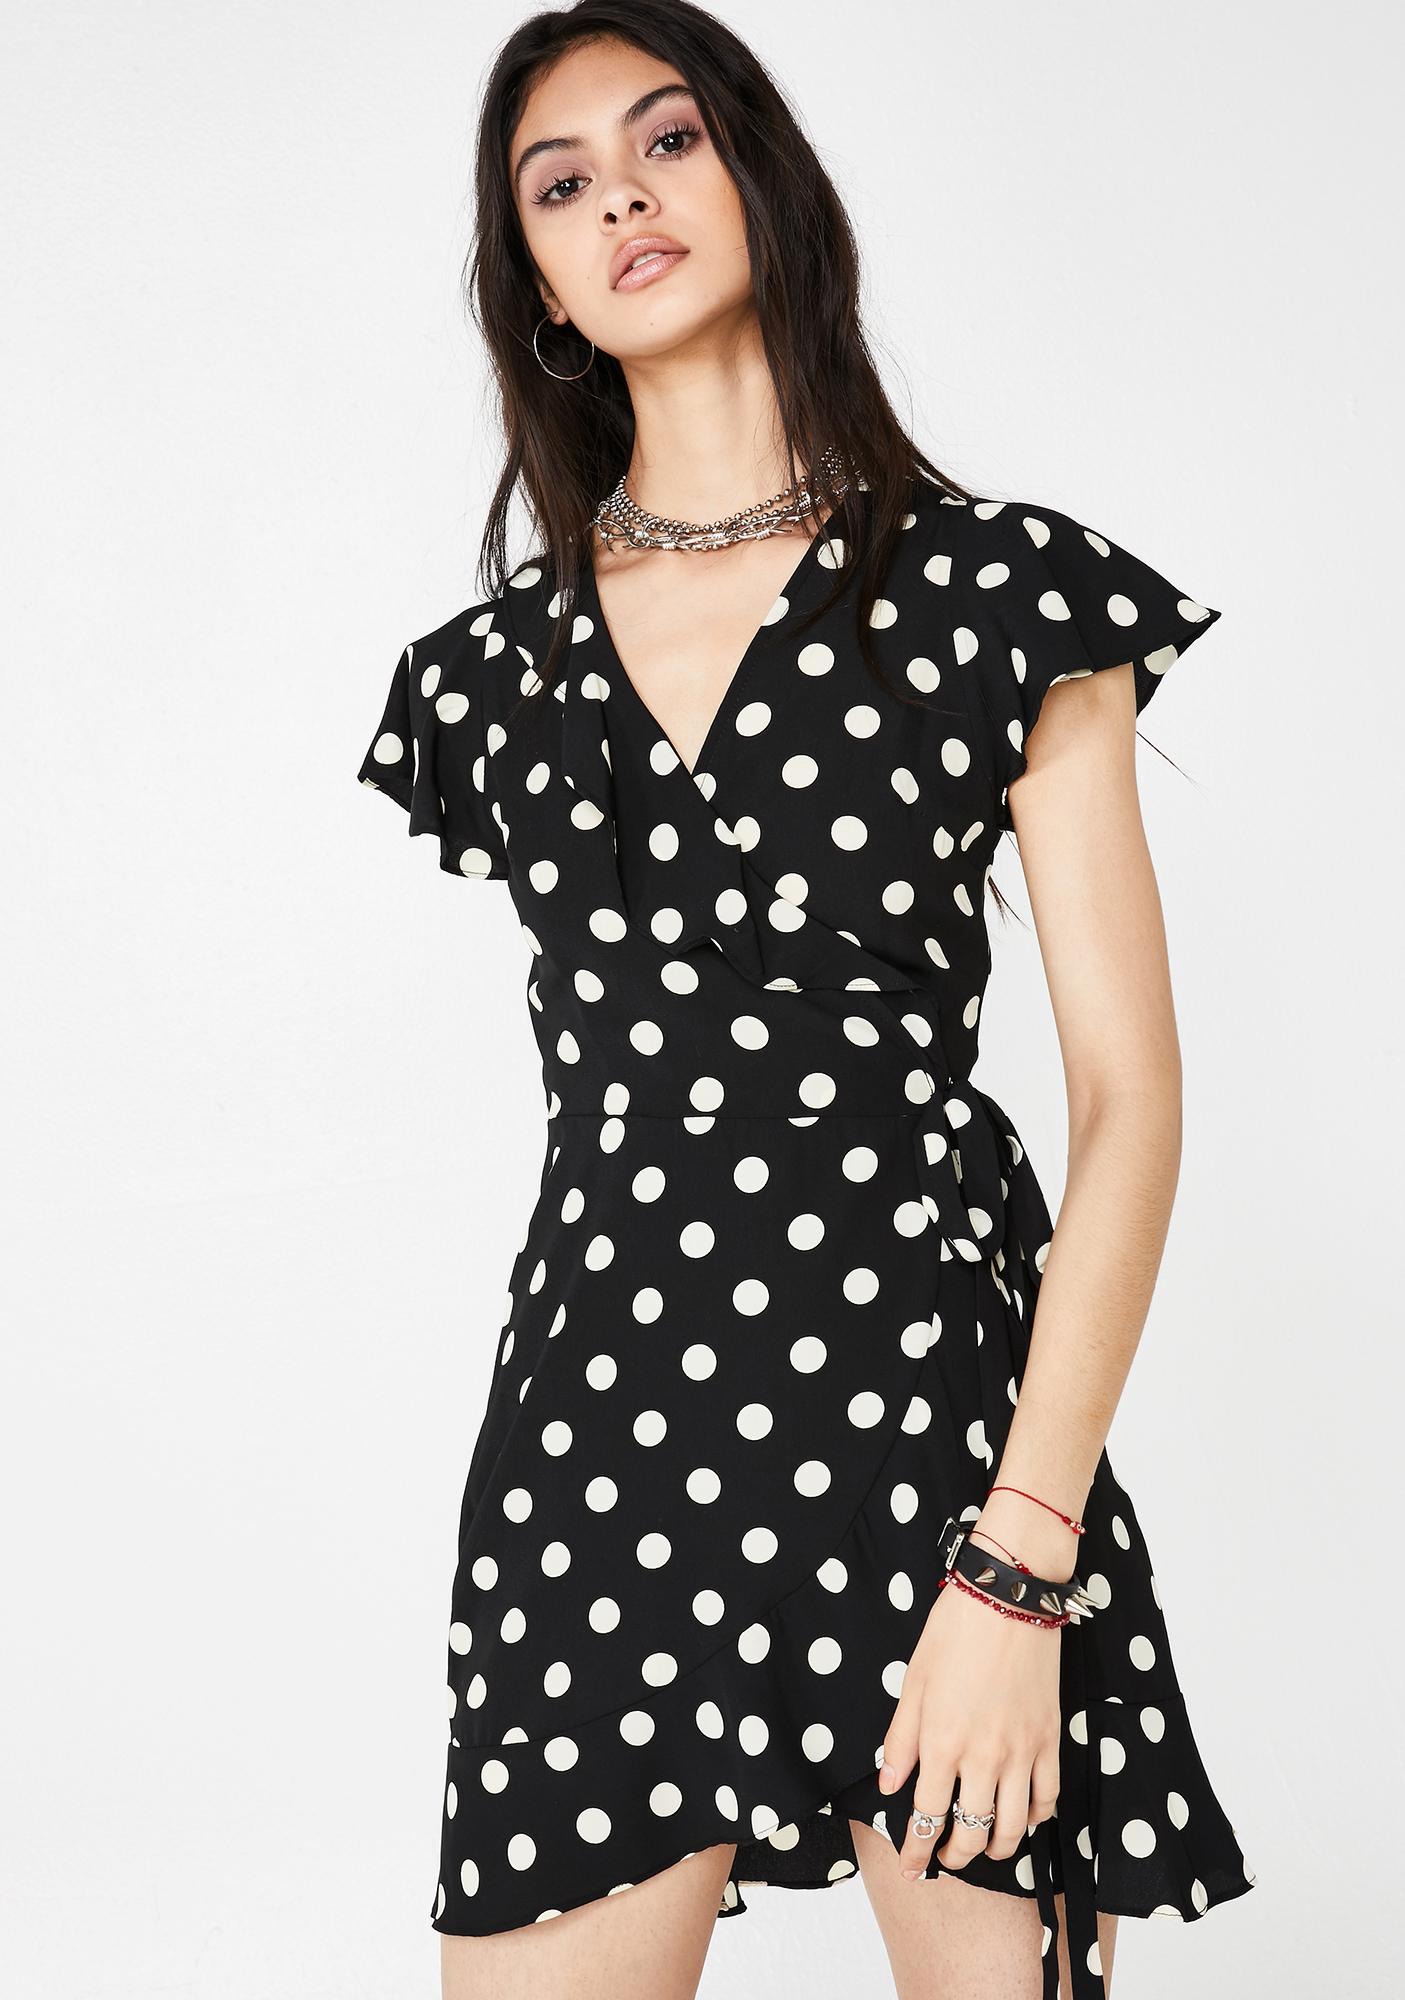 cute polka dot dress